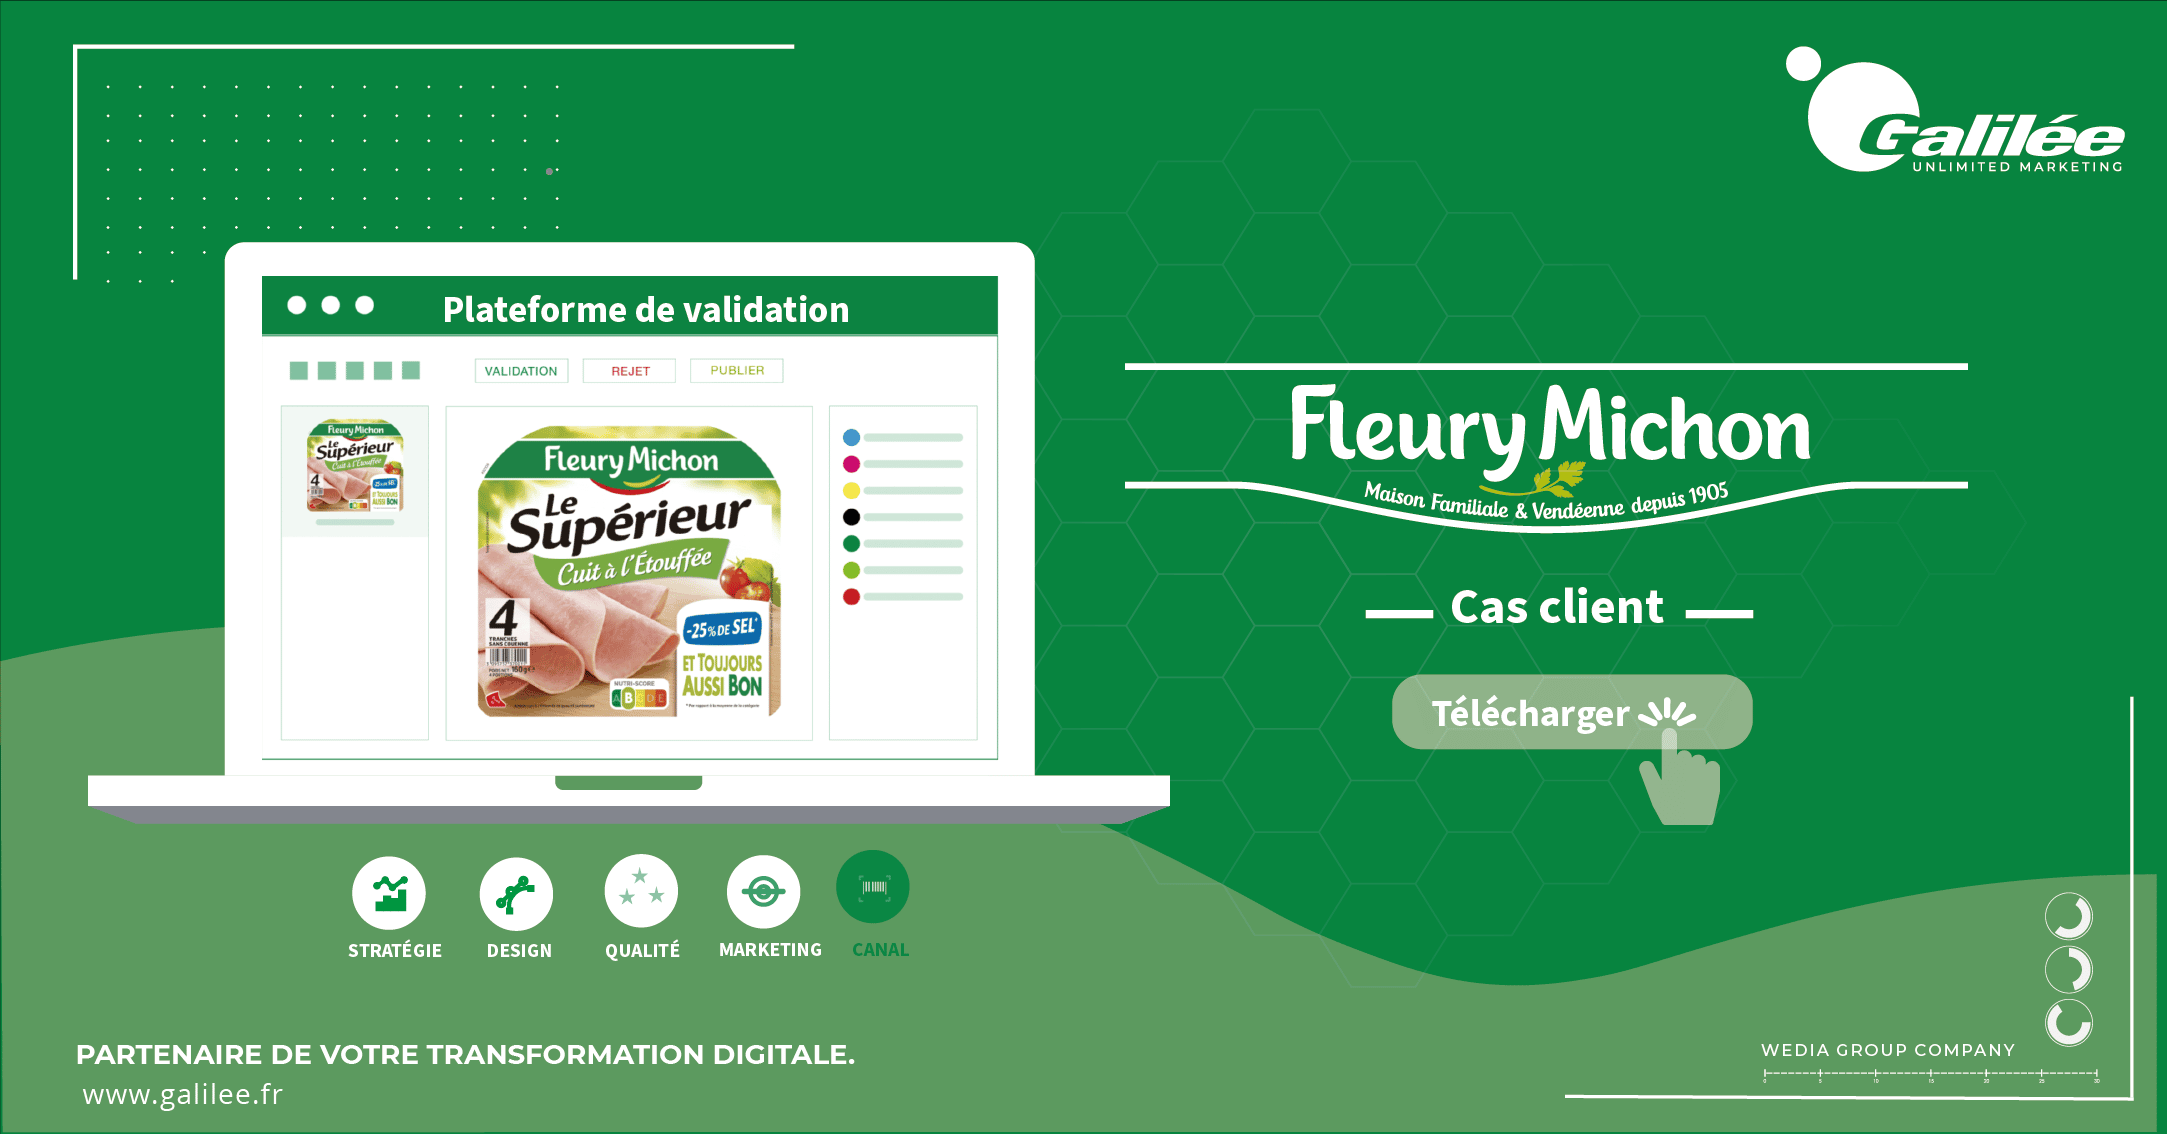 La plateforme de validation packaging de Fleury Michon